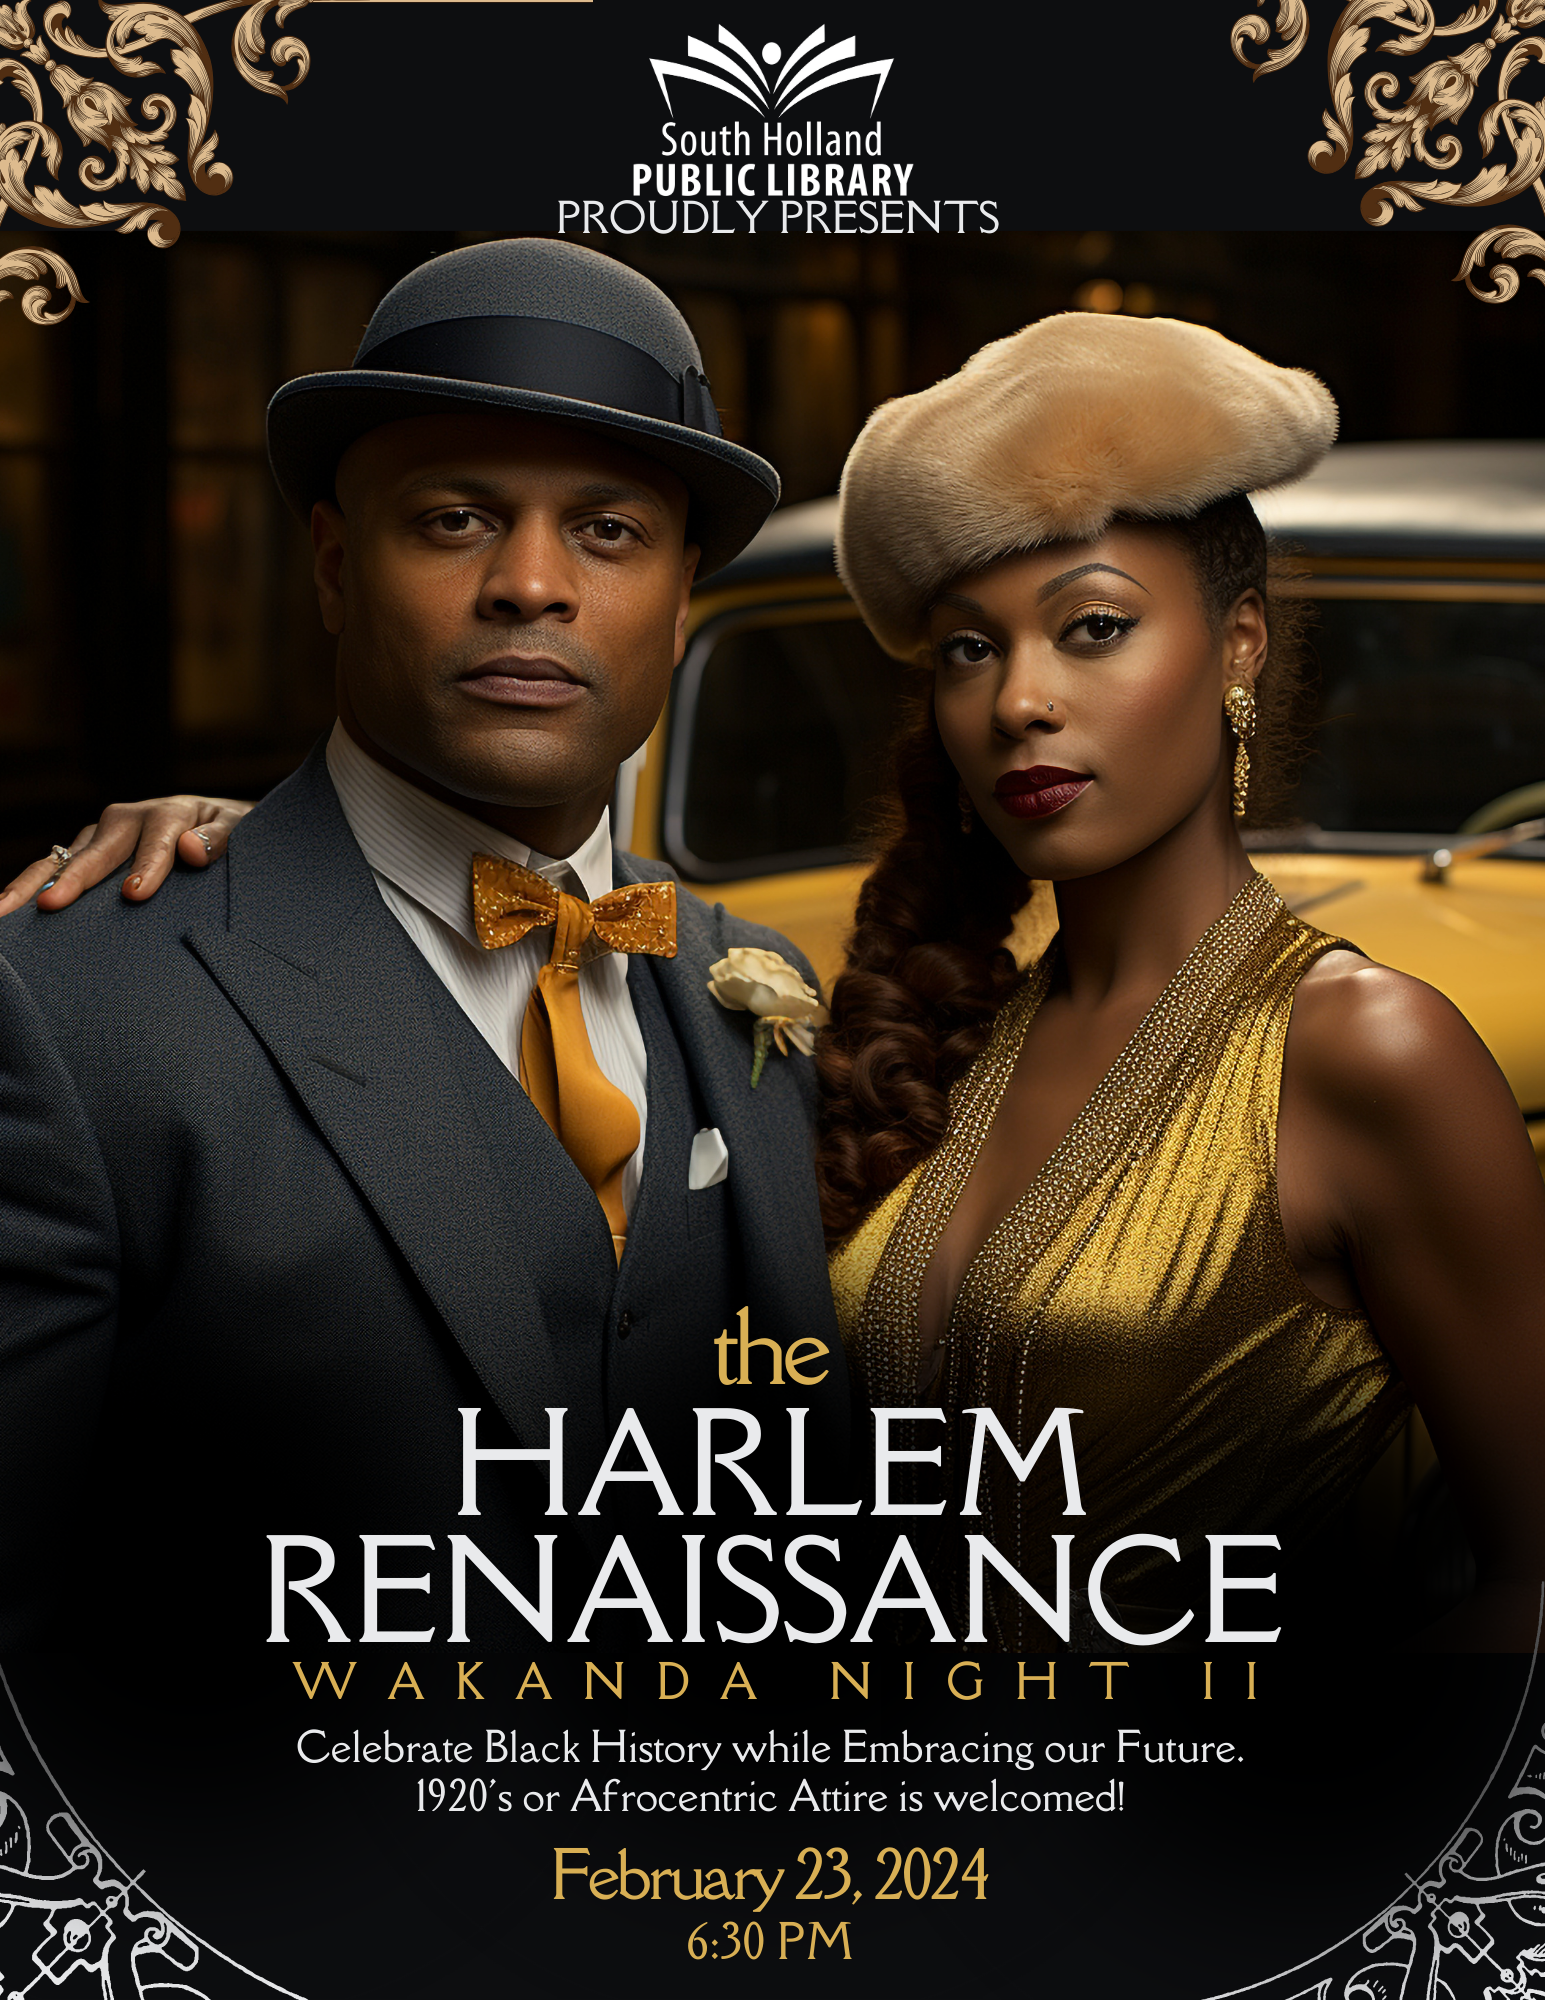 The Harlem Renaissance: Wakanda Night II